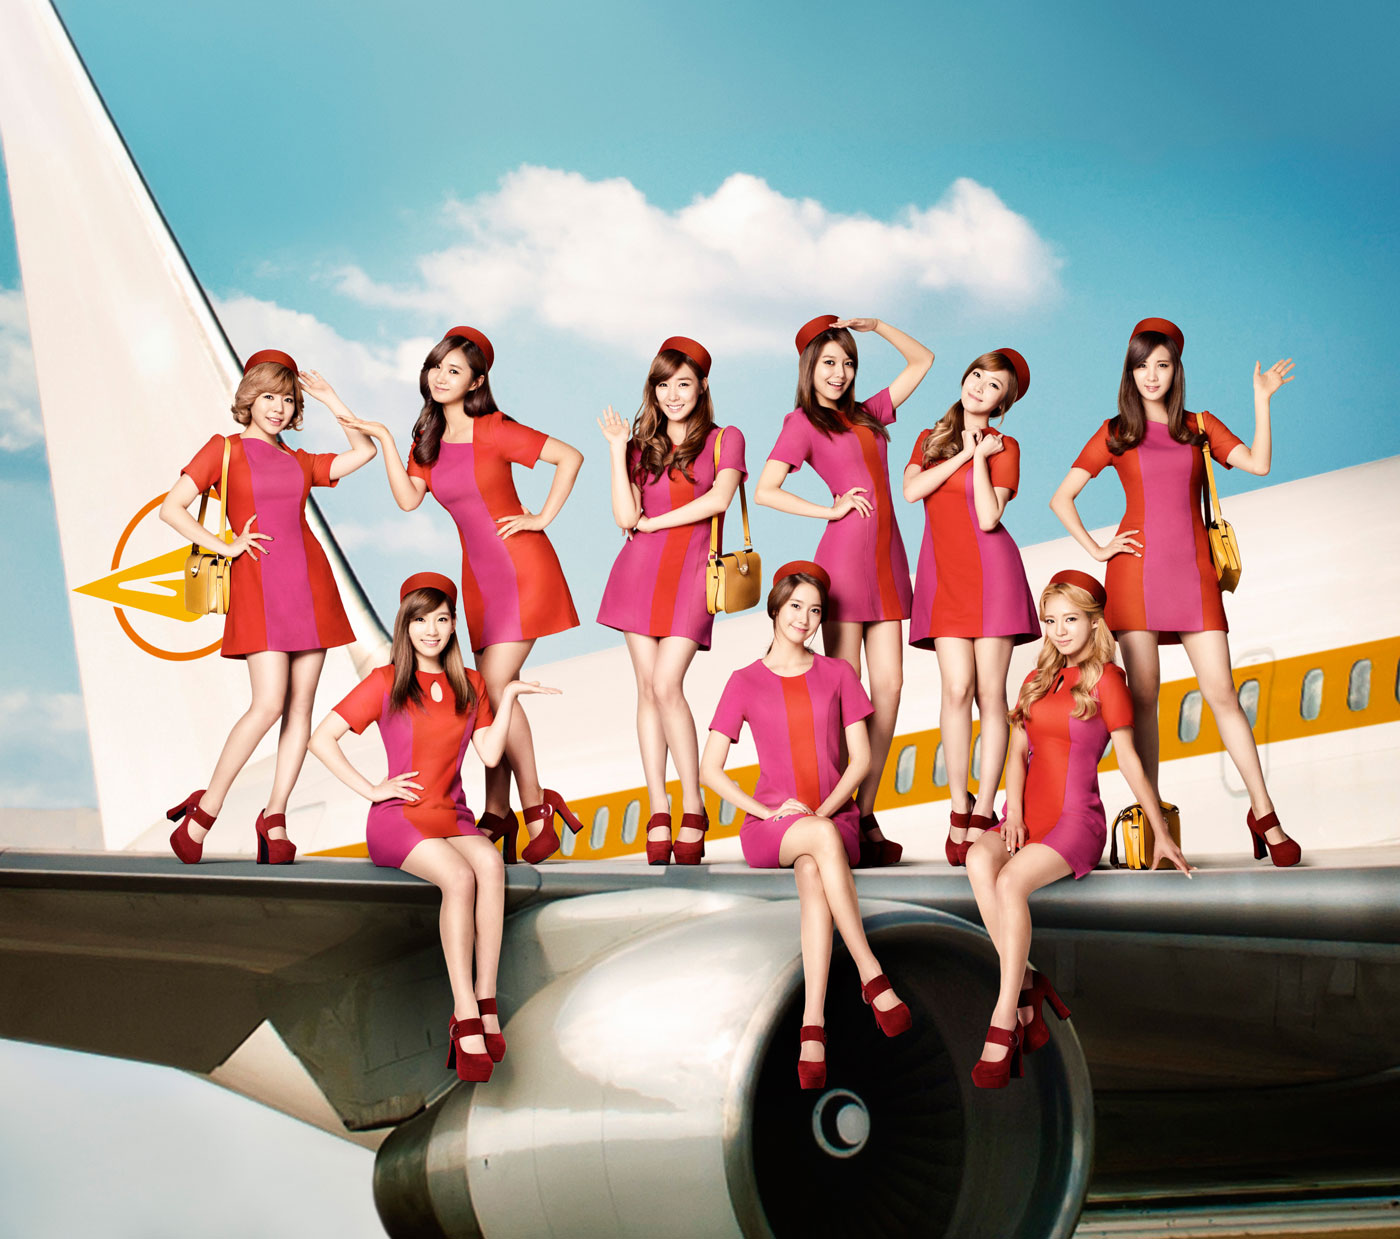 [22-11-2013]Album tiếng Nhật thứ 3 của Girls' Generation sẽ có tên "LOVE&PEACE" Artwork2